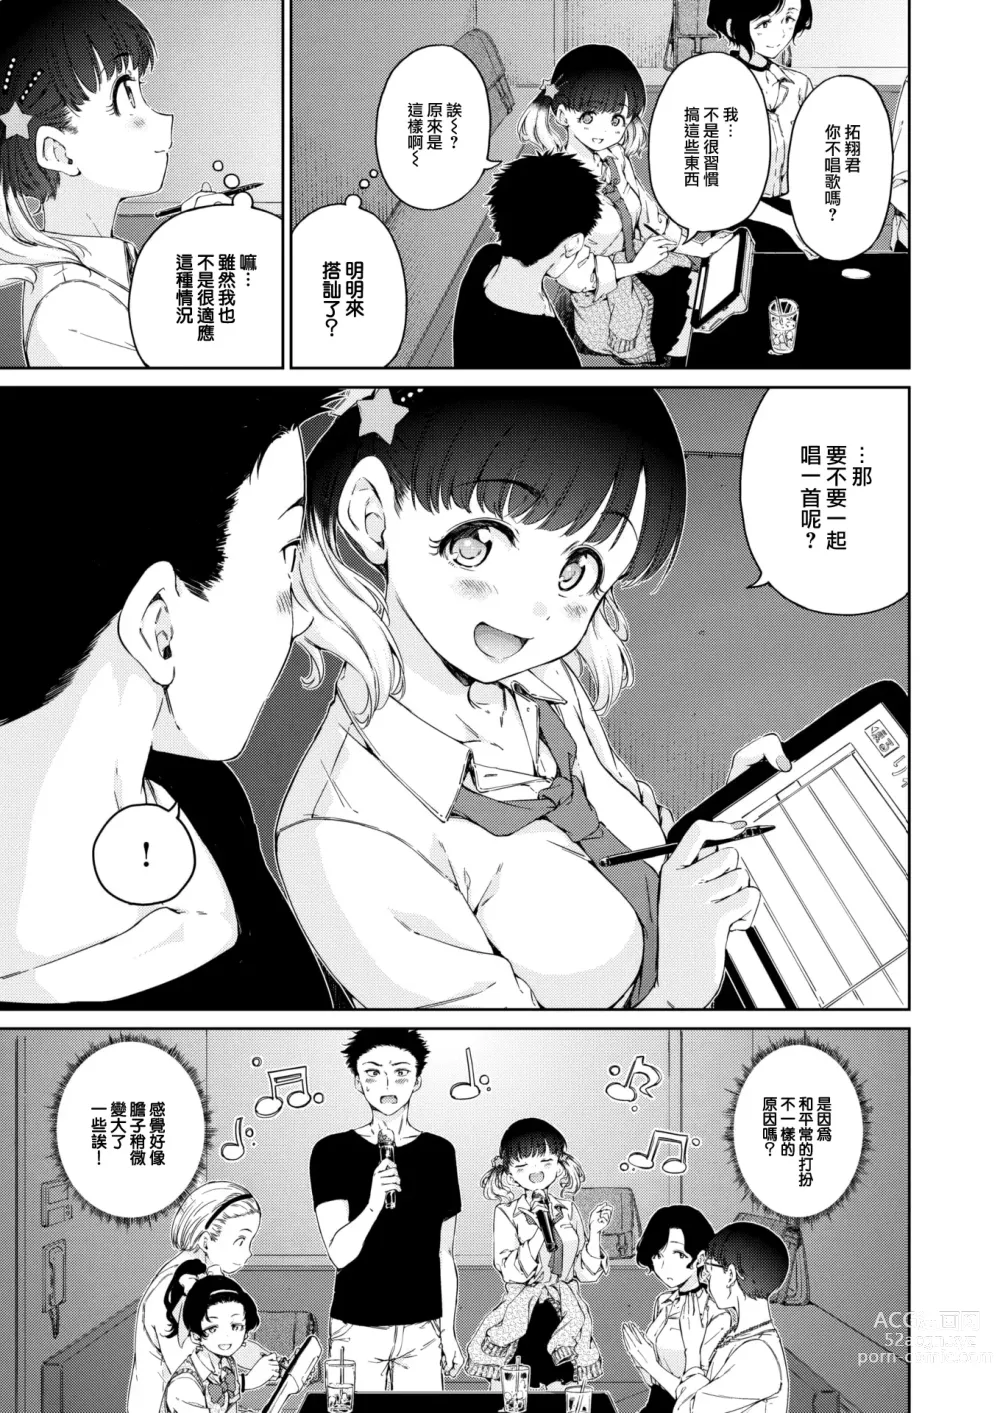 Page 8 of manga Natsu, Kibun Netsukkikyuu.